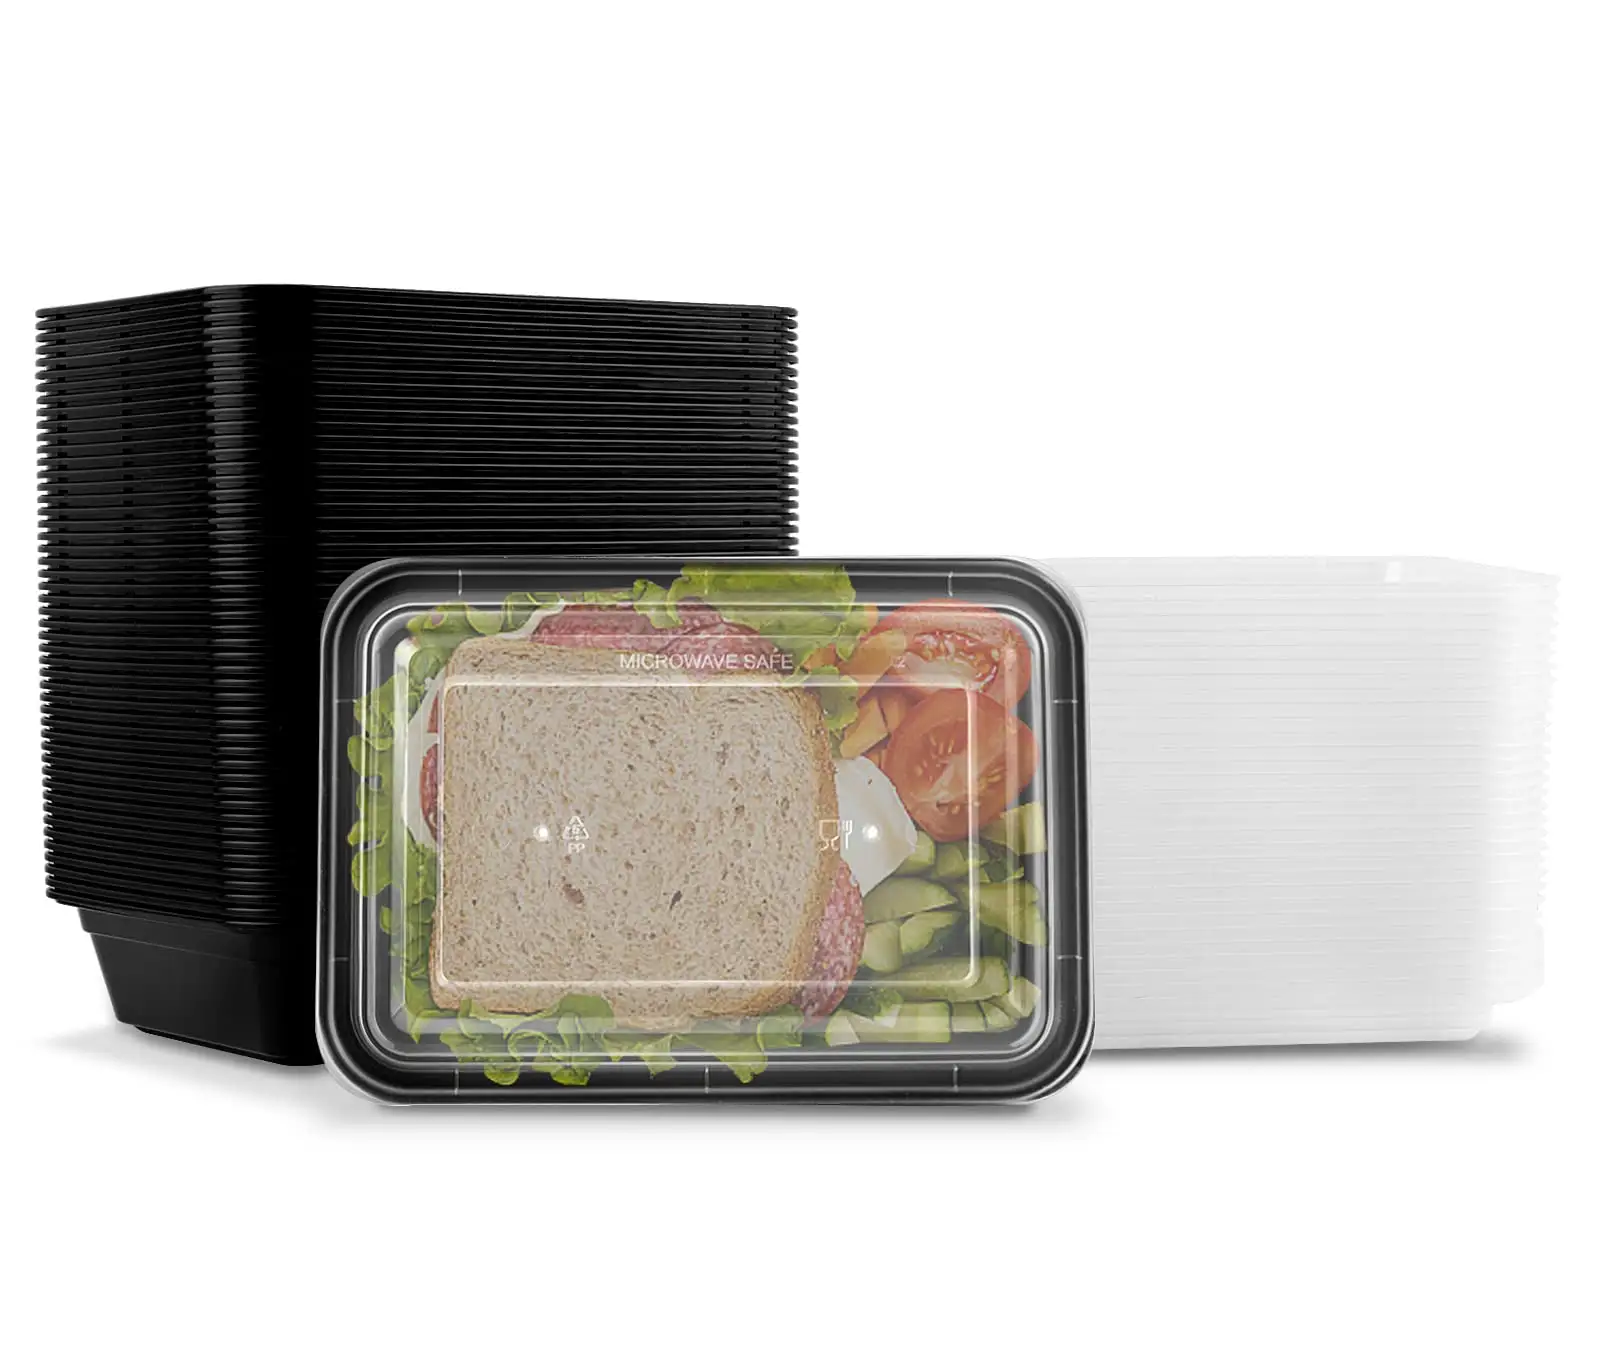 Contenants de préparation de repas 38oz sans BPA pour micro-ondes/congélateur/lave-vaisselle Boîte à lunch Bento jetable